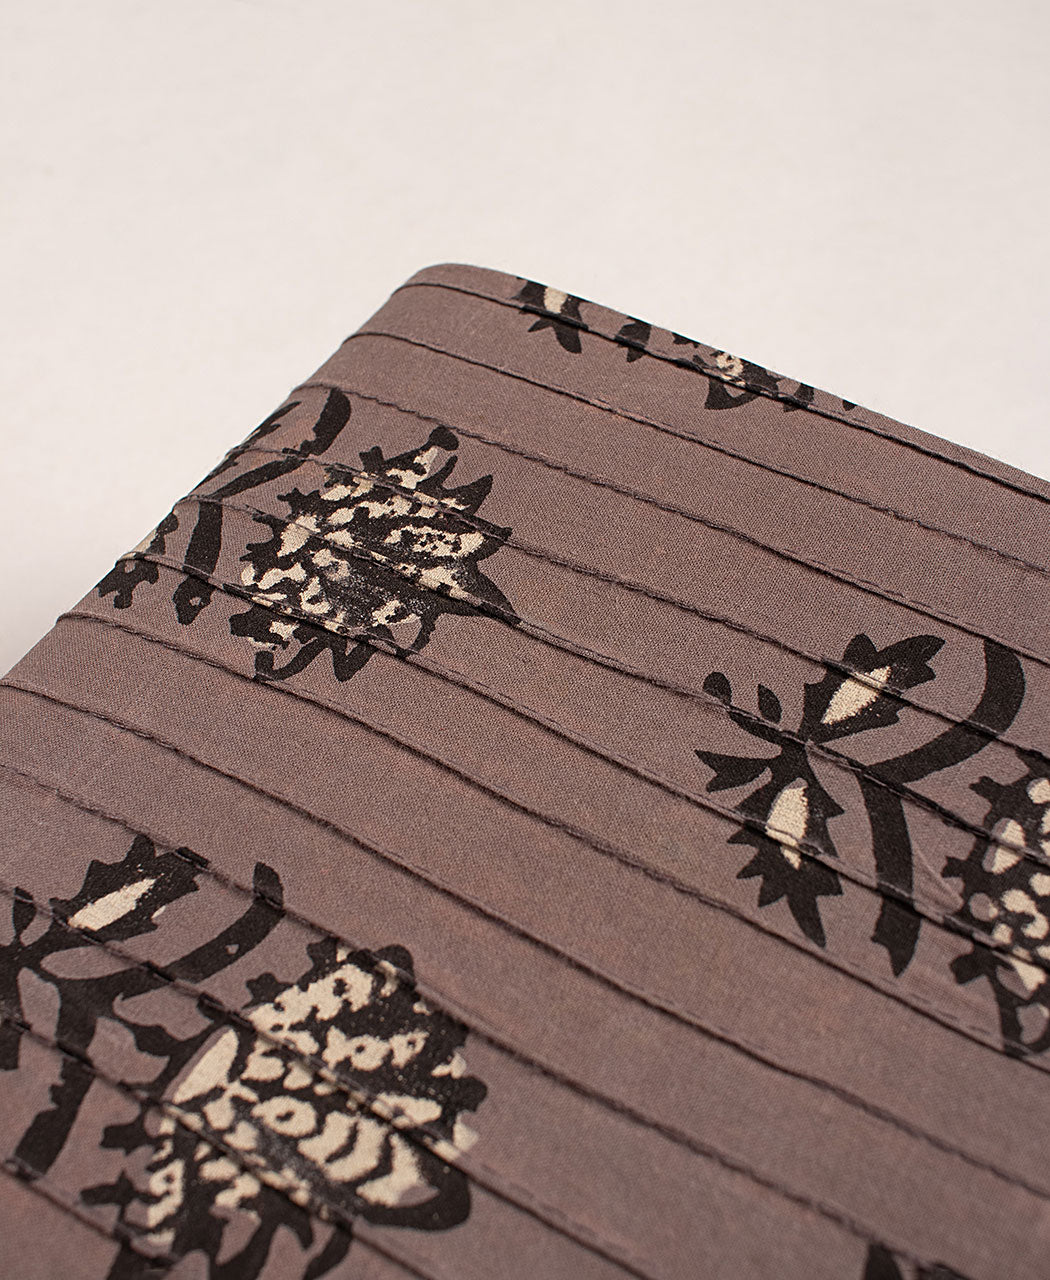 Handmade Pin-Tucks Kashish Hand Block Cotton Fabric Cover Diary